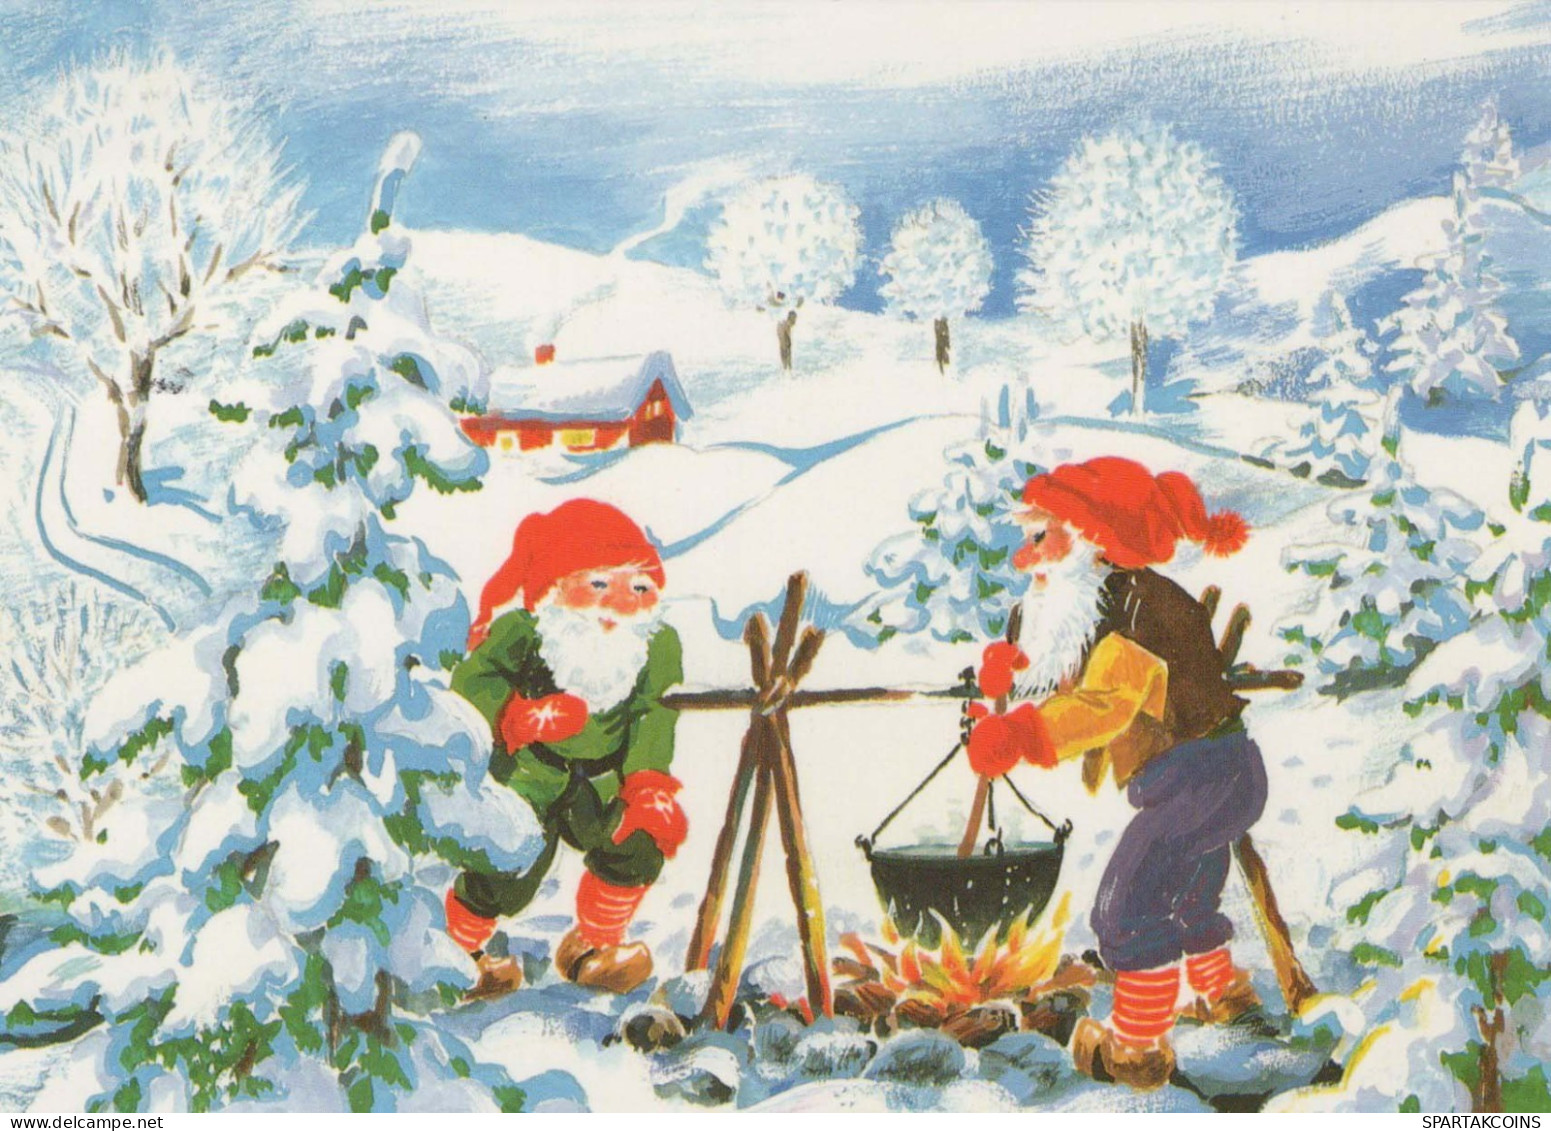 WEIHNACHTSMANN SANTA CLAUS Neujahr Weihnachten Vintage Ansichtskarte Postkarte CPSM #PBB306.A - Santa Claus